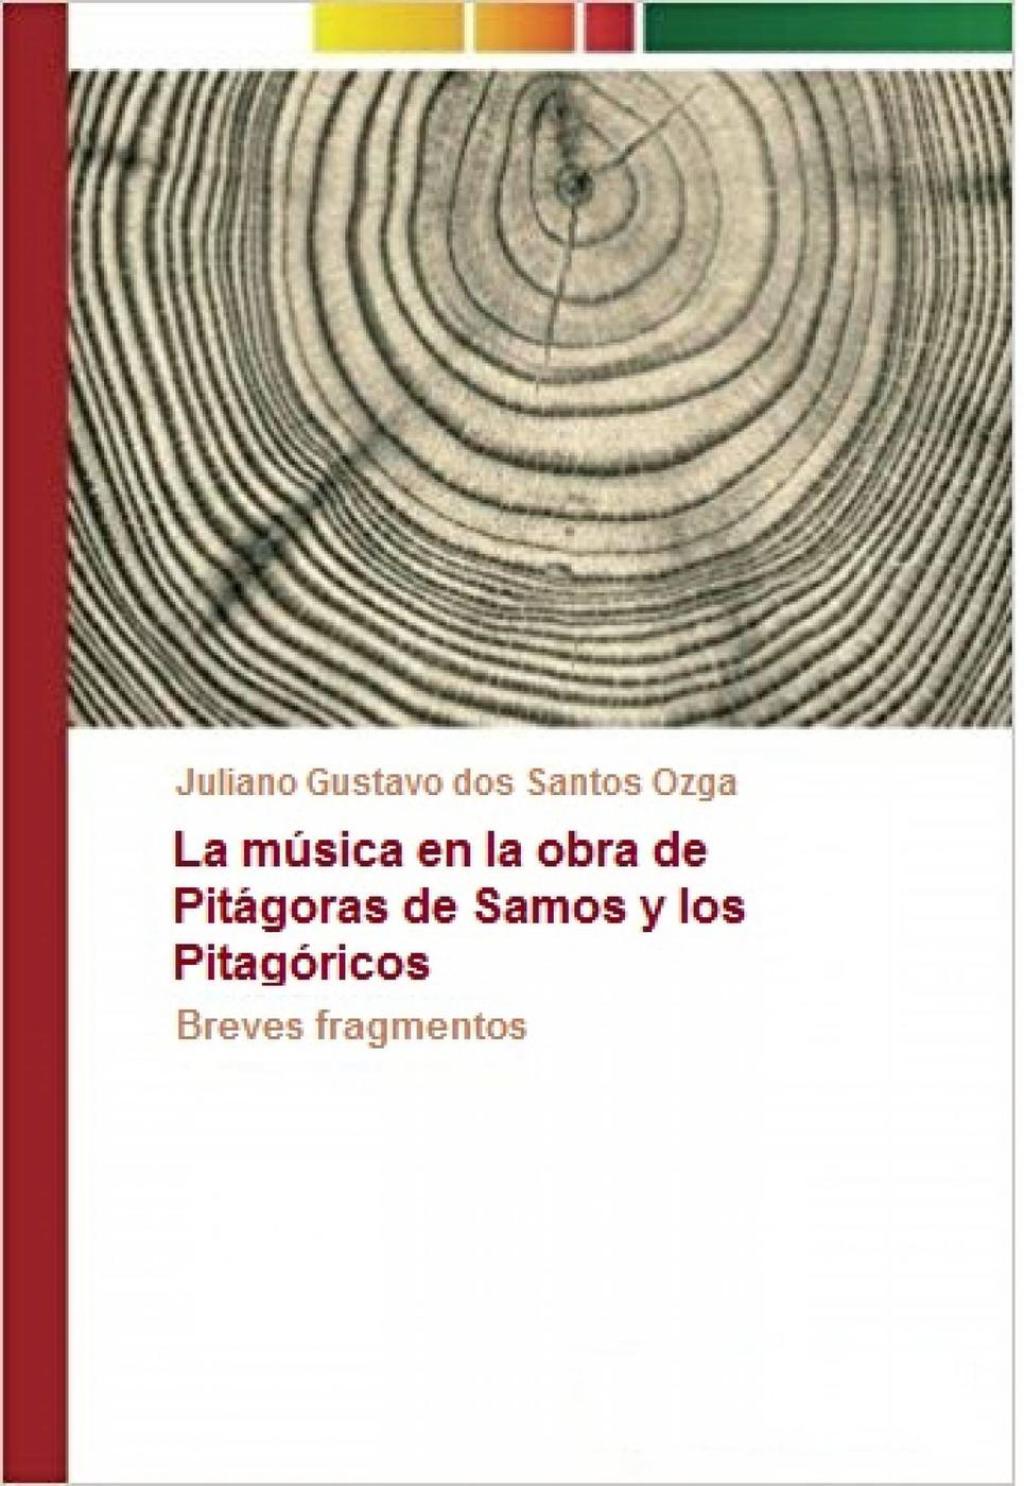 La mÃºsica en la obra de PitÃ¡goras de Samos y los PitagÃ³ricos (eBook) - Juliano Gustavo dos Santos Ozga,